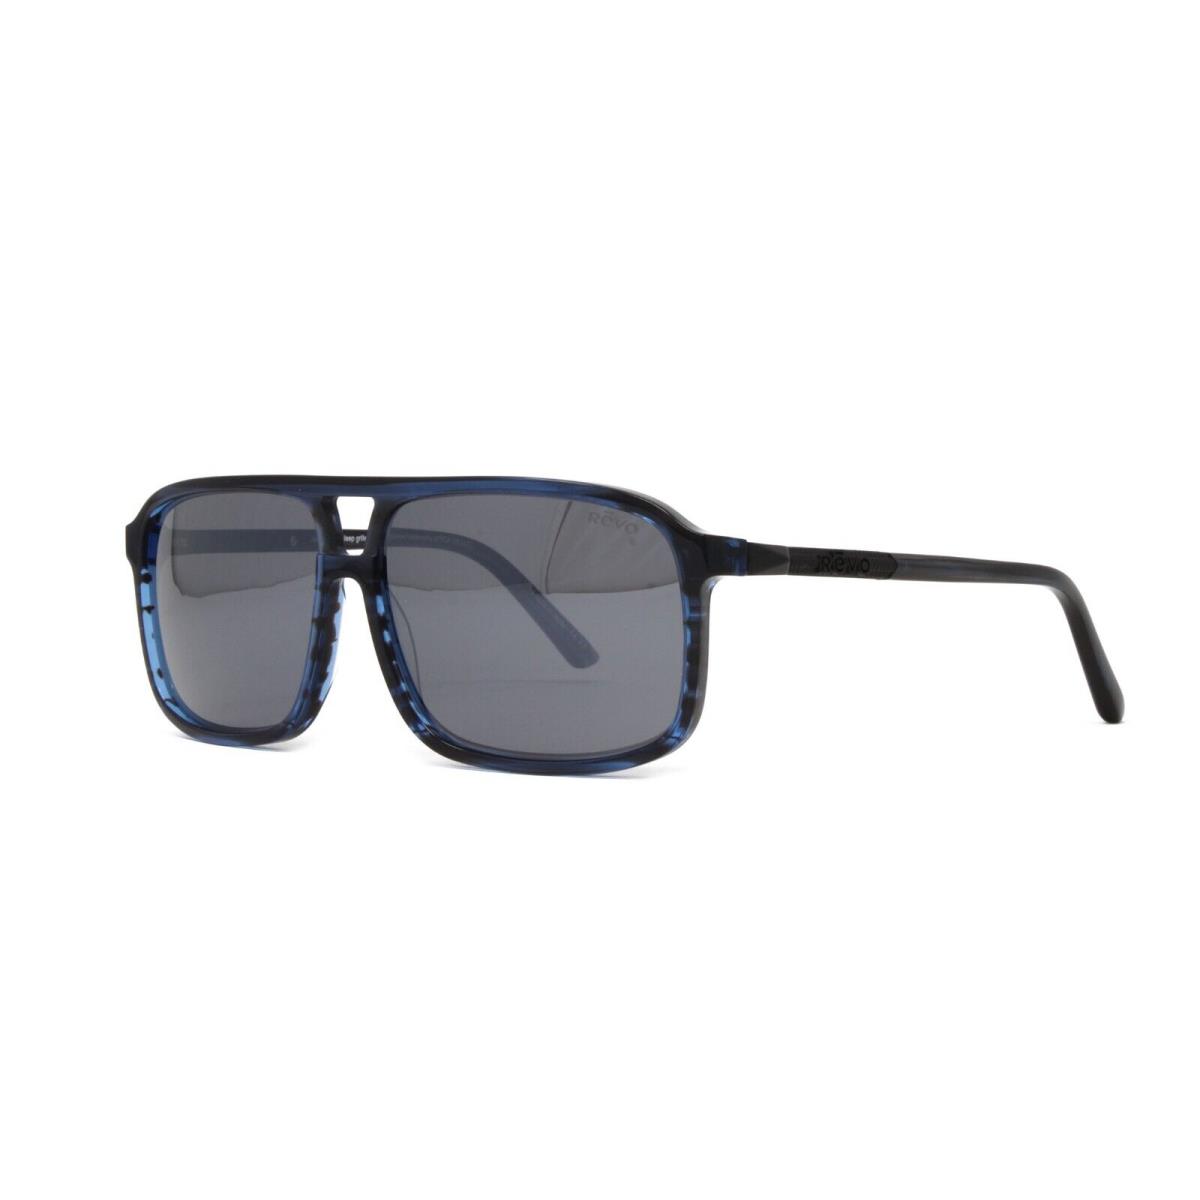 Revo Sunglasses Desert RE1165 05GY Blue Horn Graphite Polarized Lens 60mm